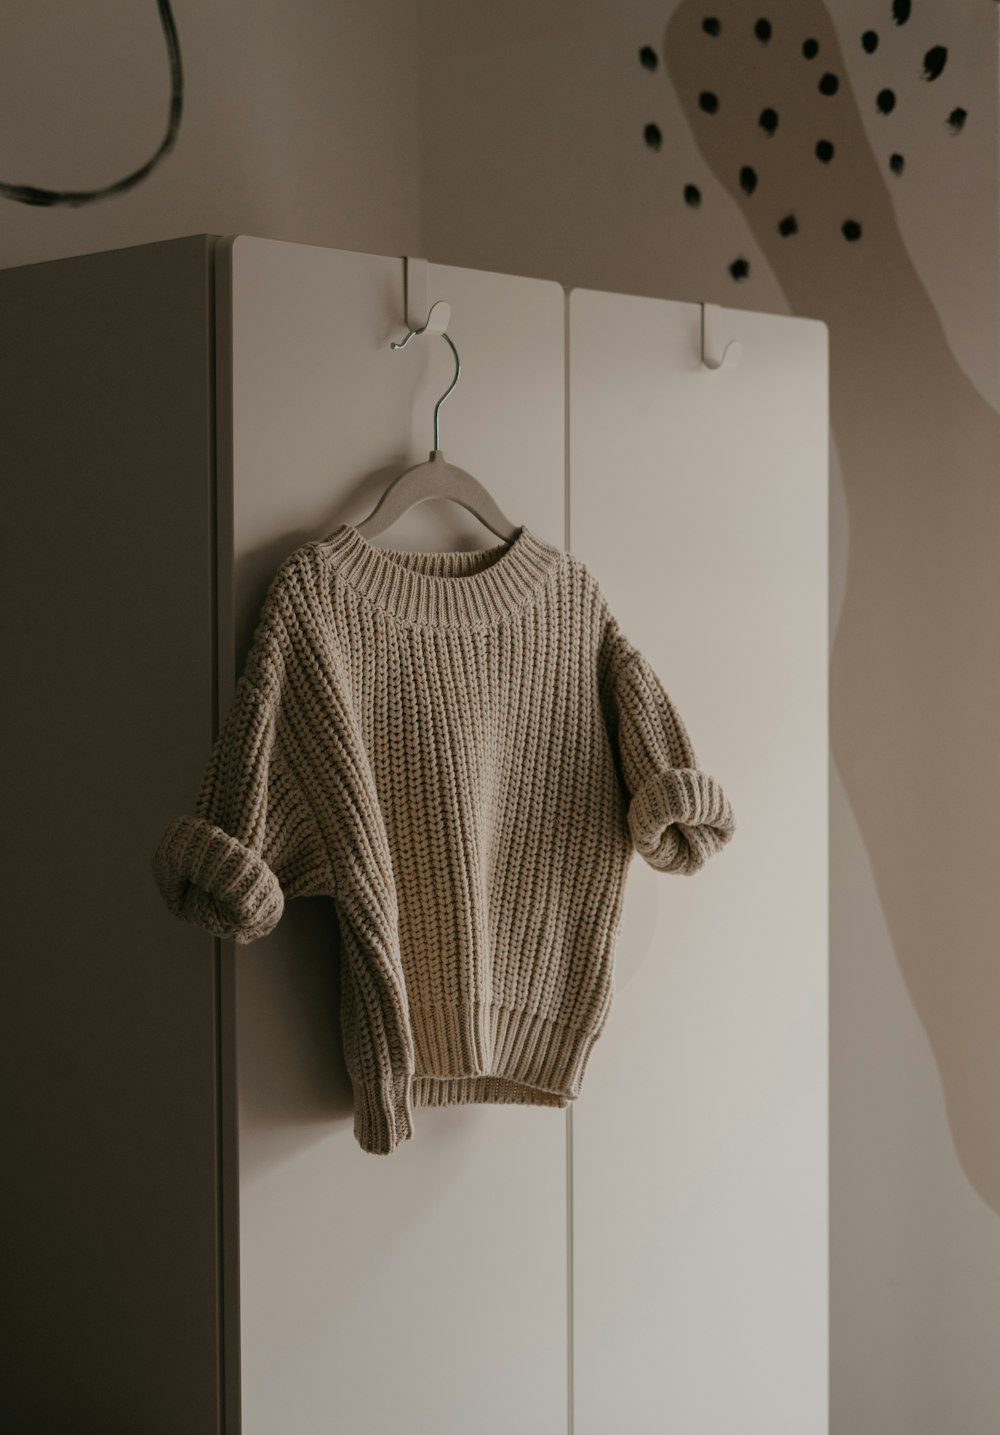 방의 고리에 매달려있는 스웨터